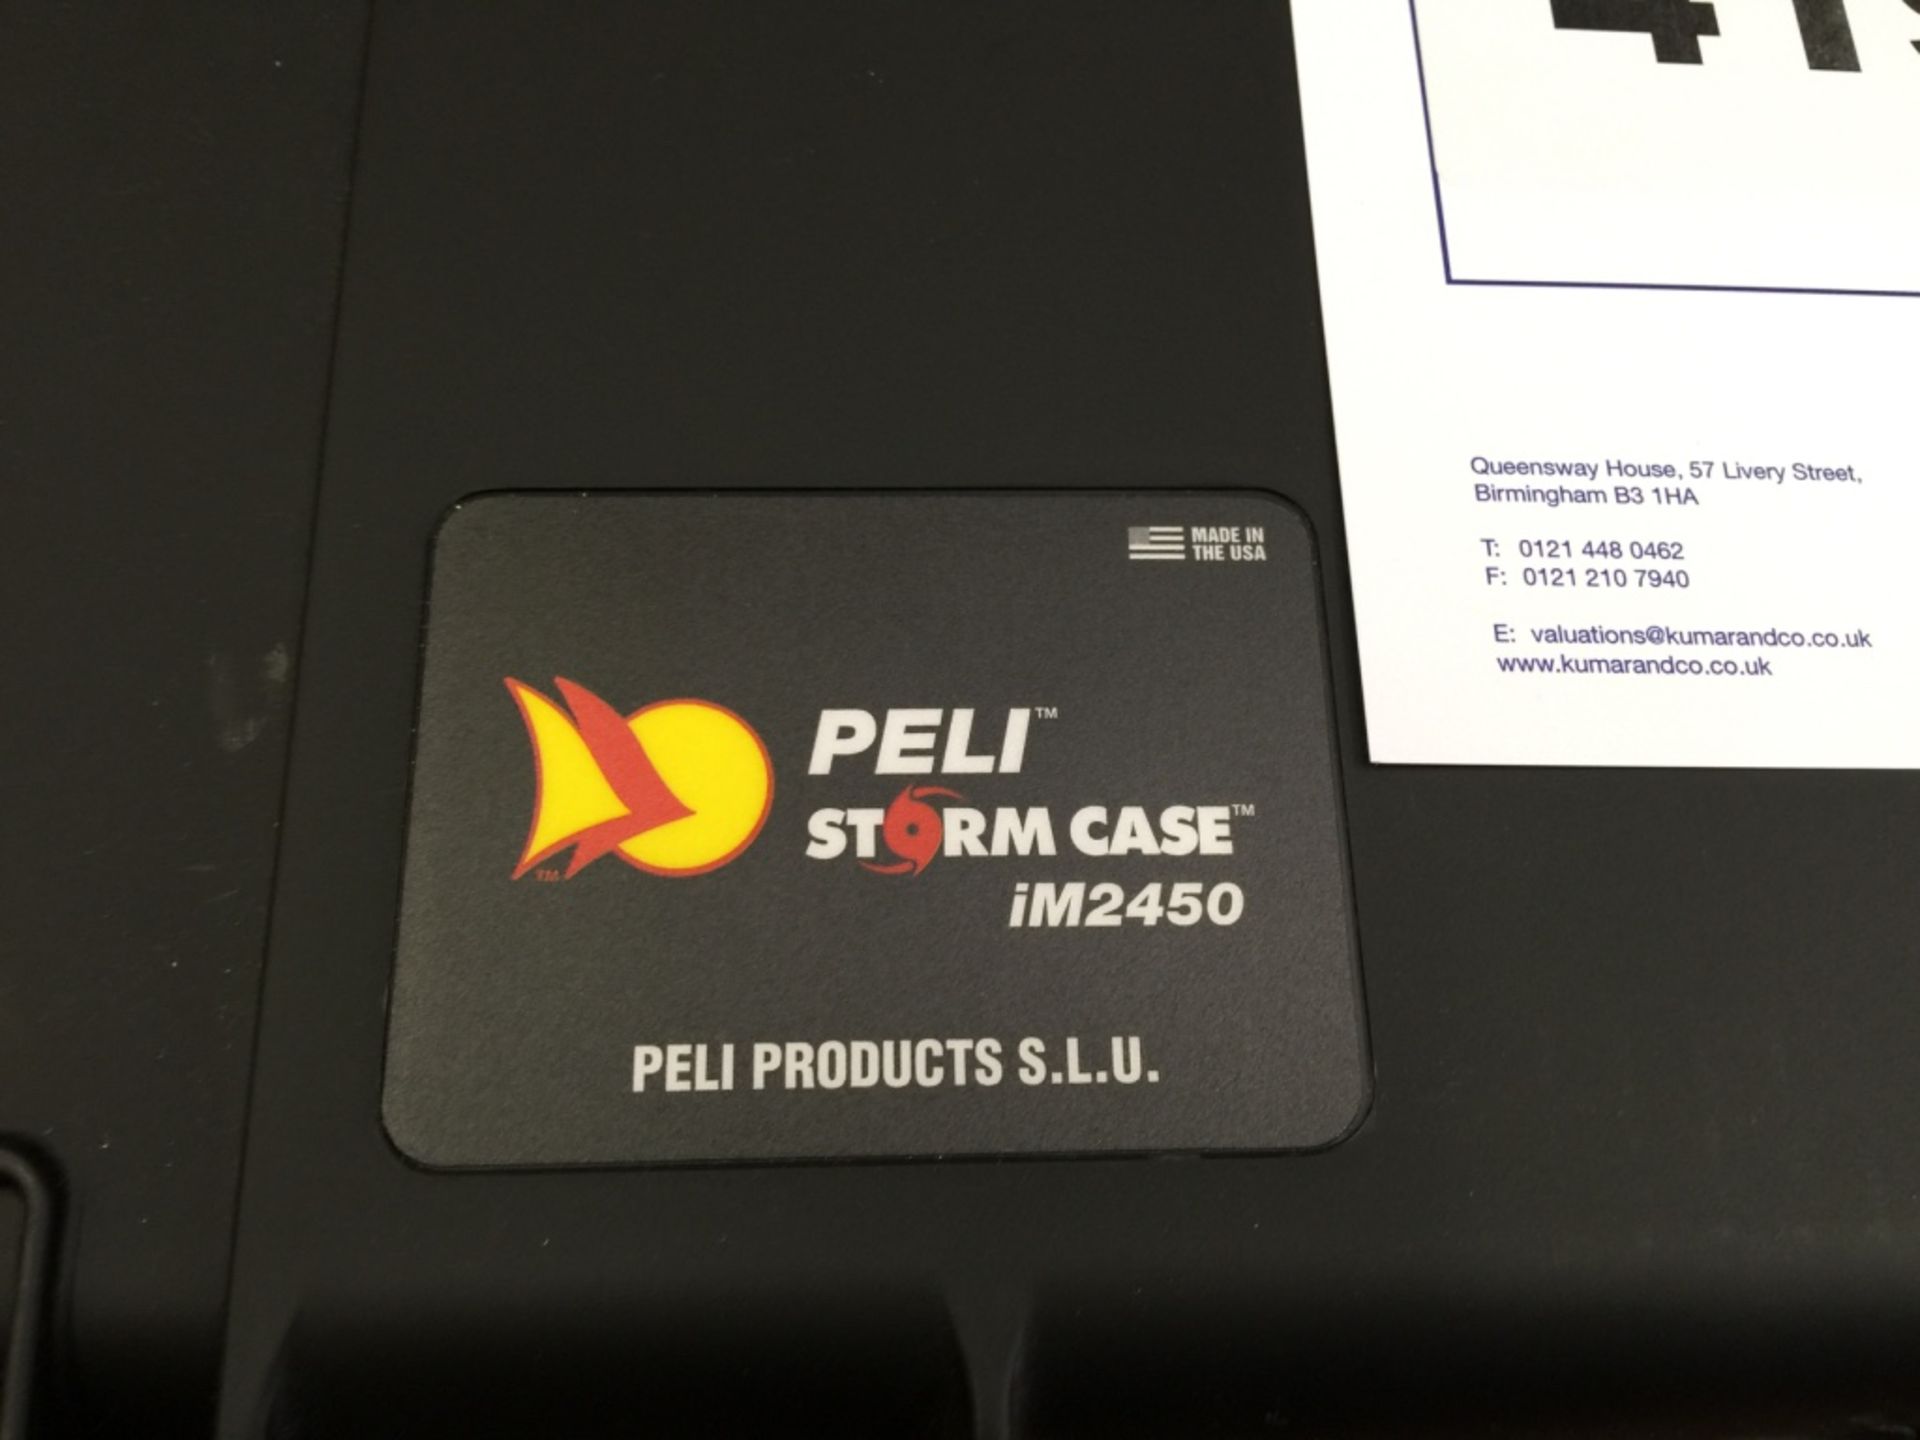 Peli Stormcase iM2450 - Water Resistant - Dustproo - Image 5 of 10